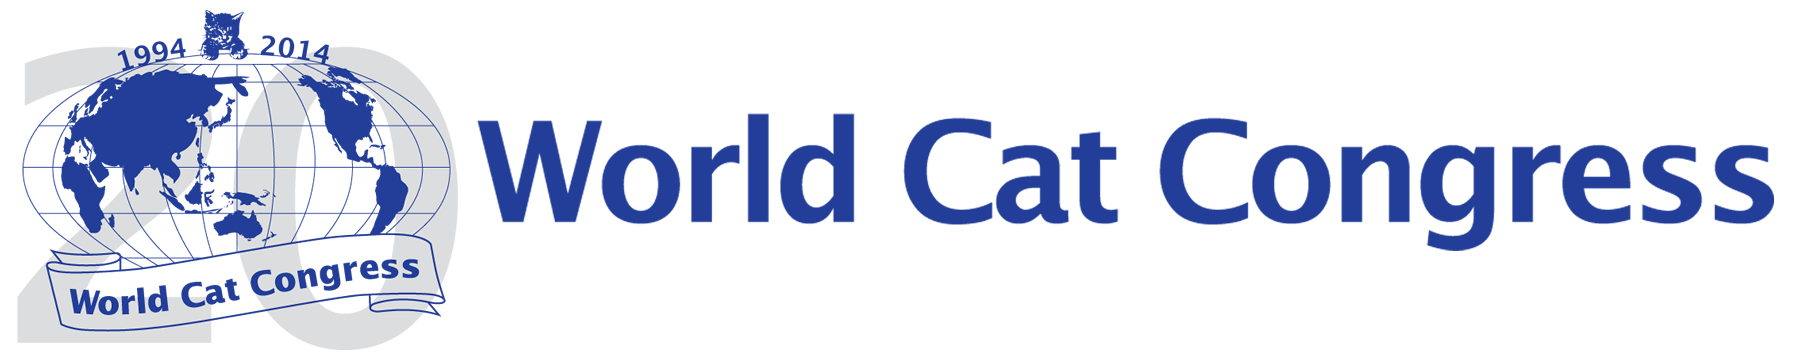 World Cat Congress Logo